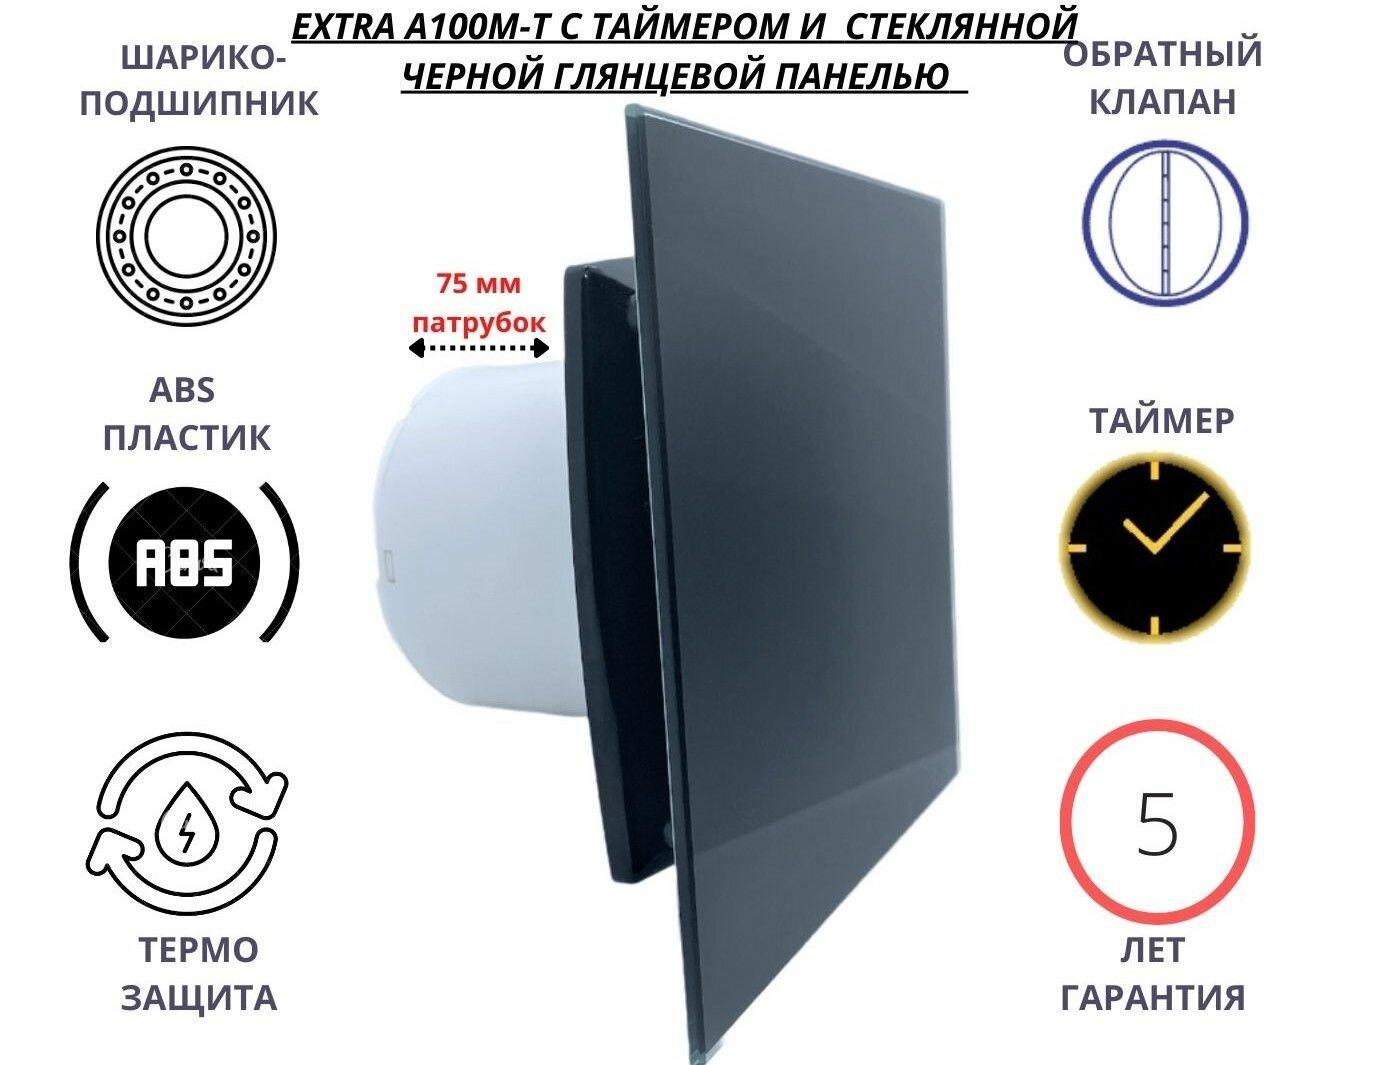 Вентилятор с таймером, D100мм со стеклянной черной глянцевой панелью, с обратным клапаном EXTRA A100М-T, Сербия